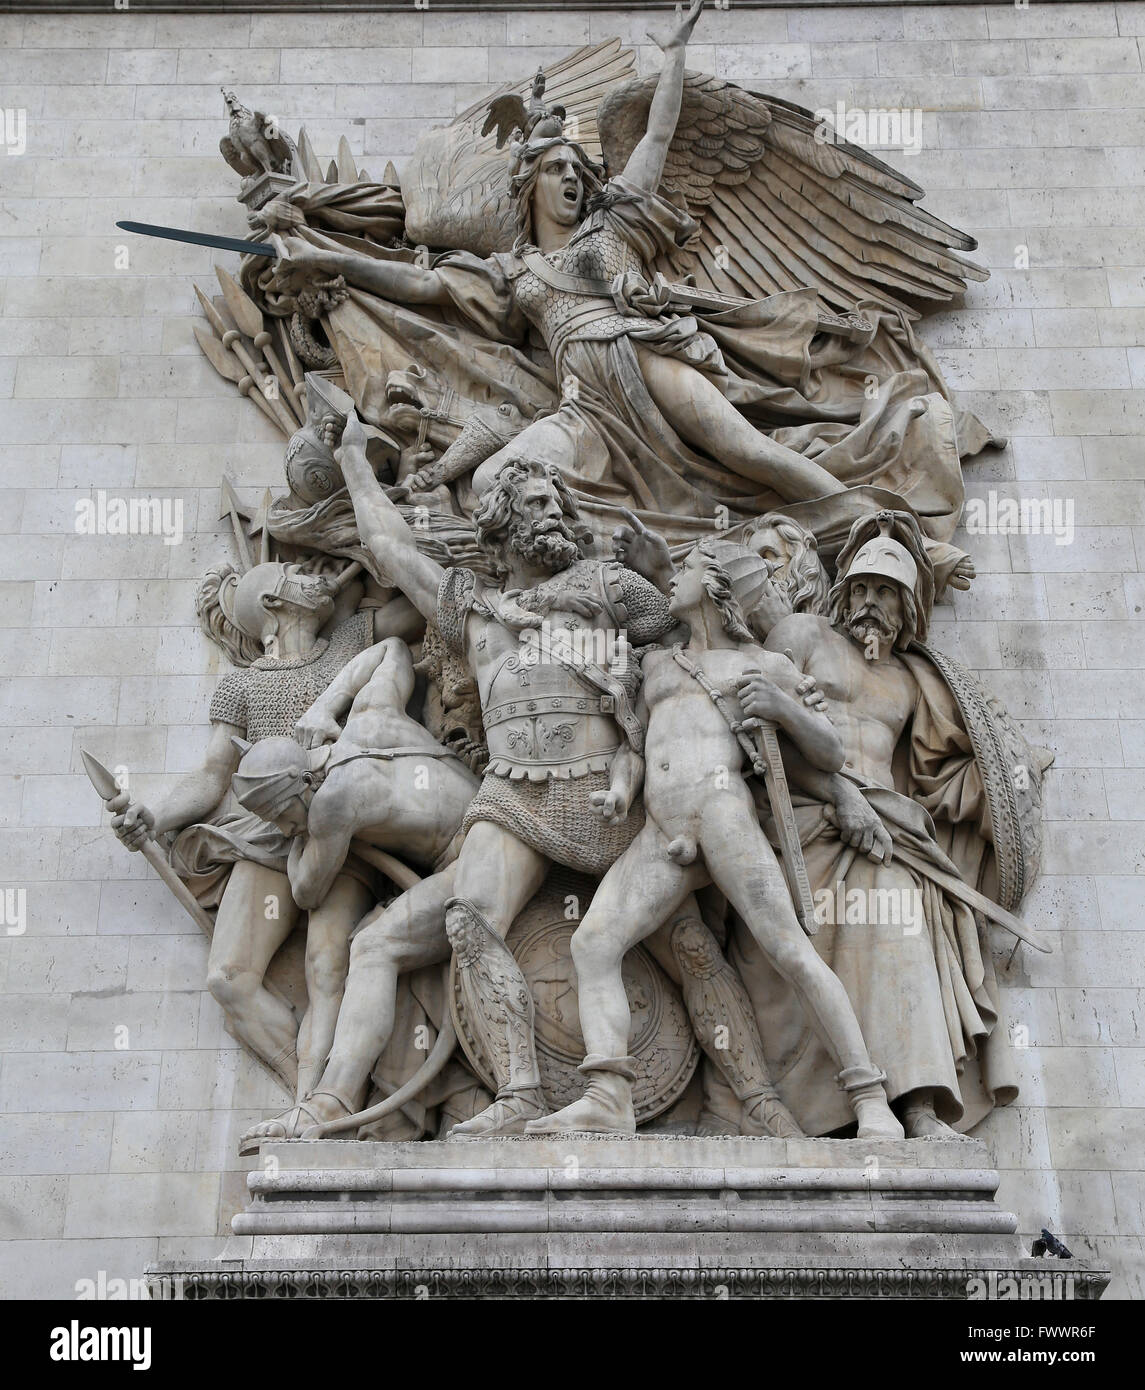 Le Depart de 1792 or La Marseillaise by Francois Rude (1784-1855). Arc the Triomphe. Paris. France. Stock Photo